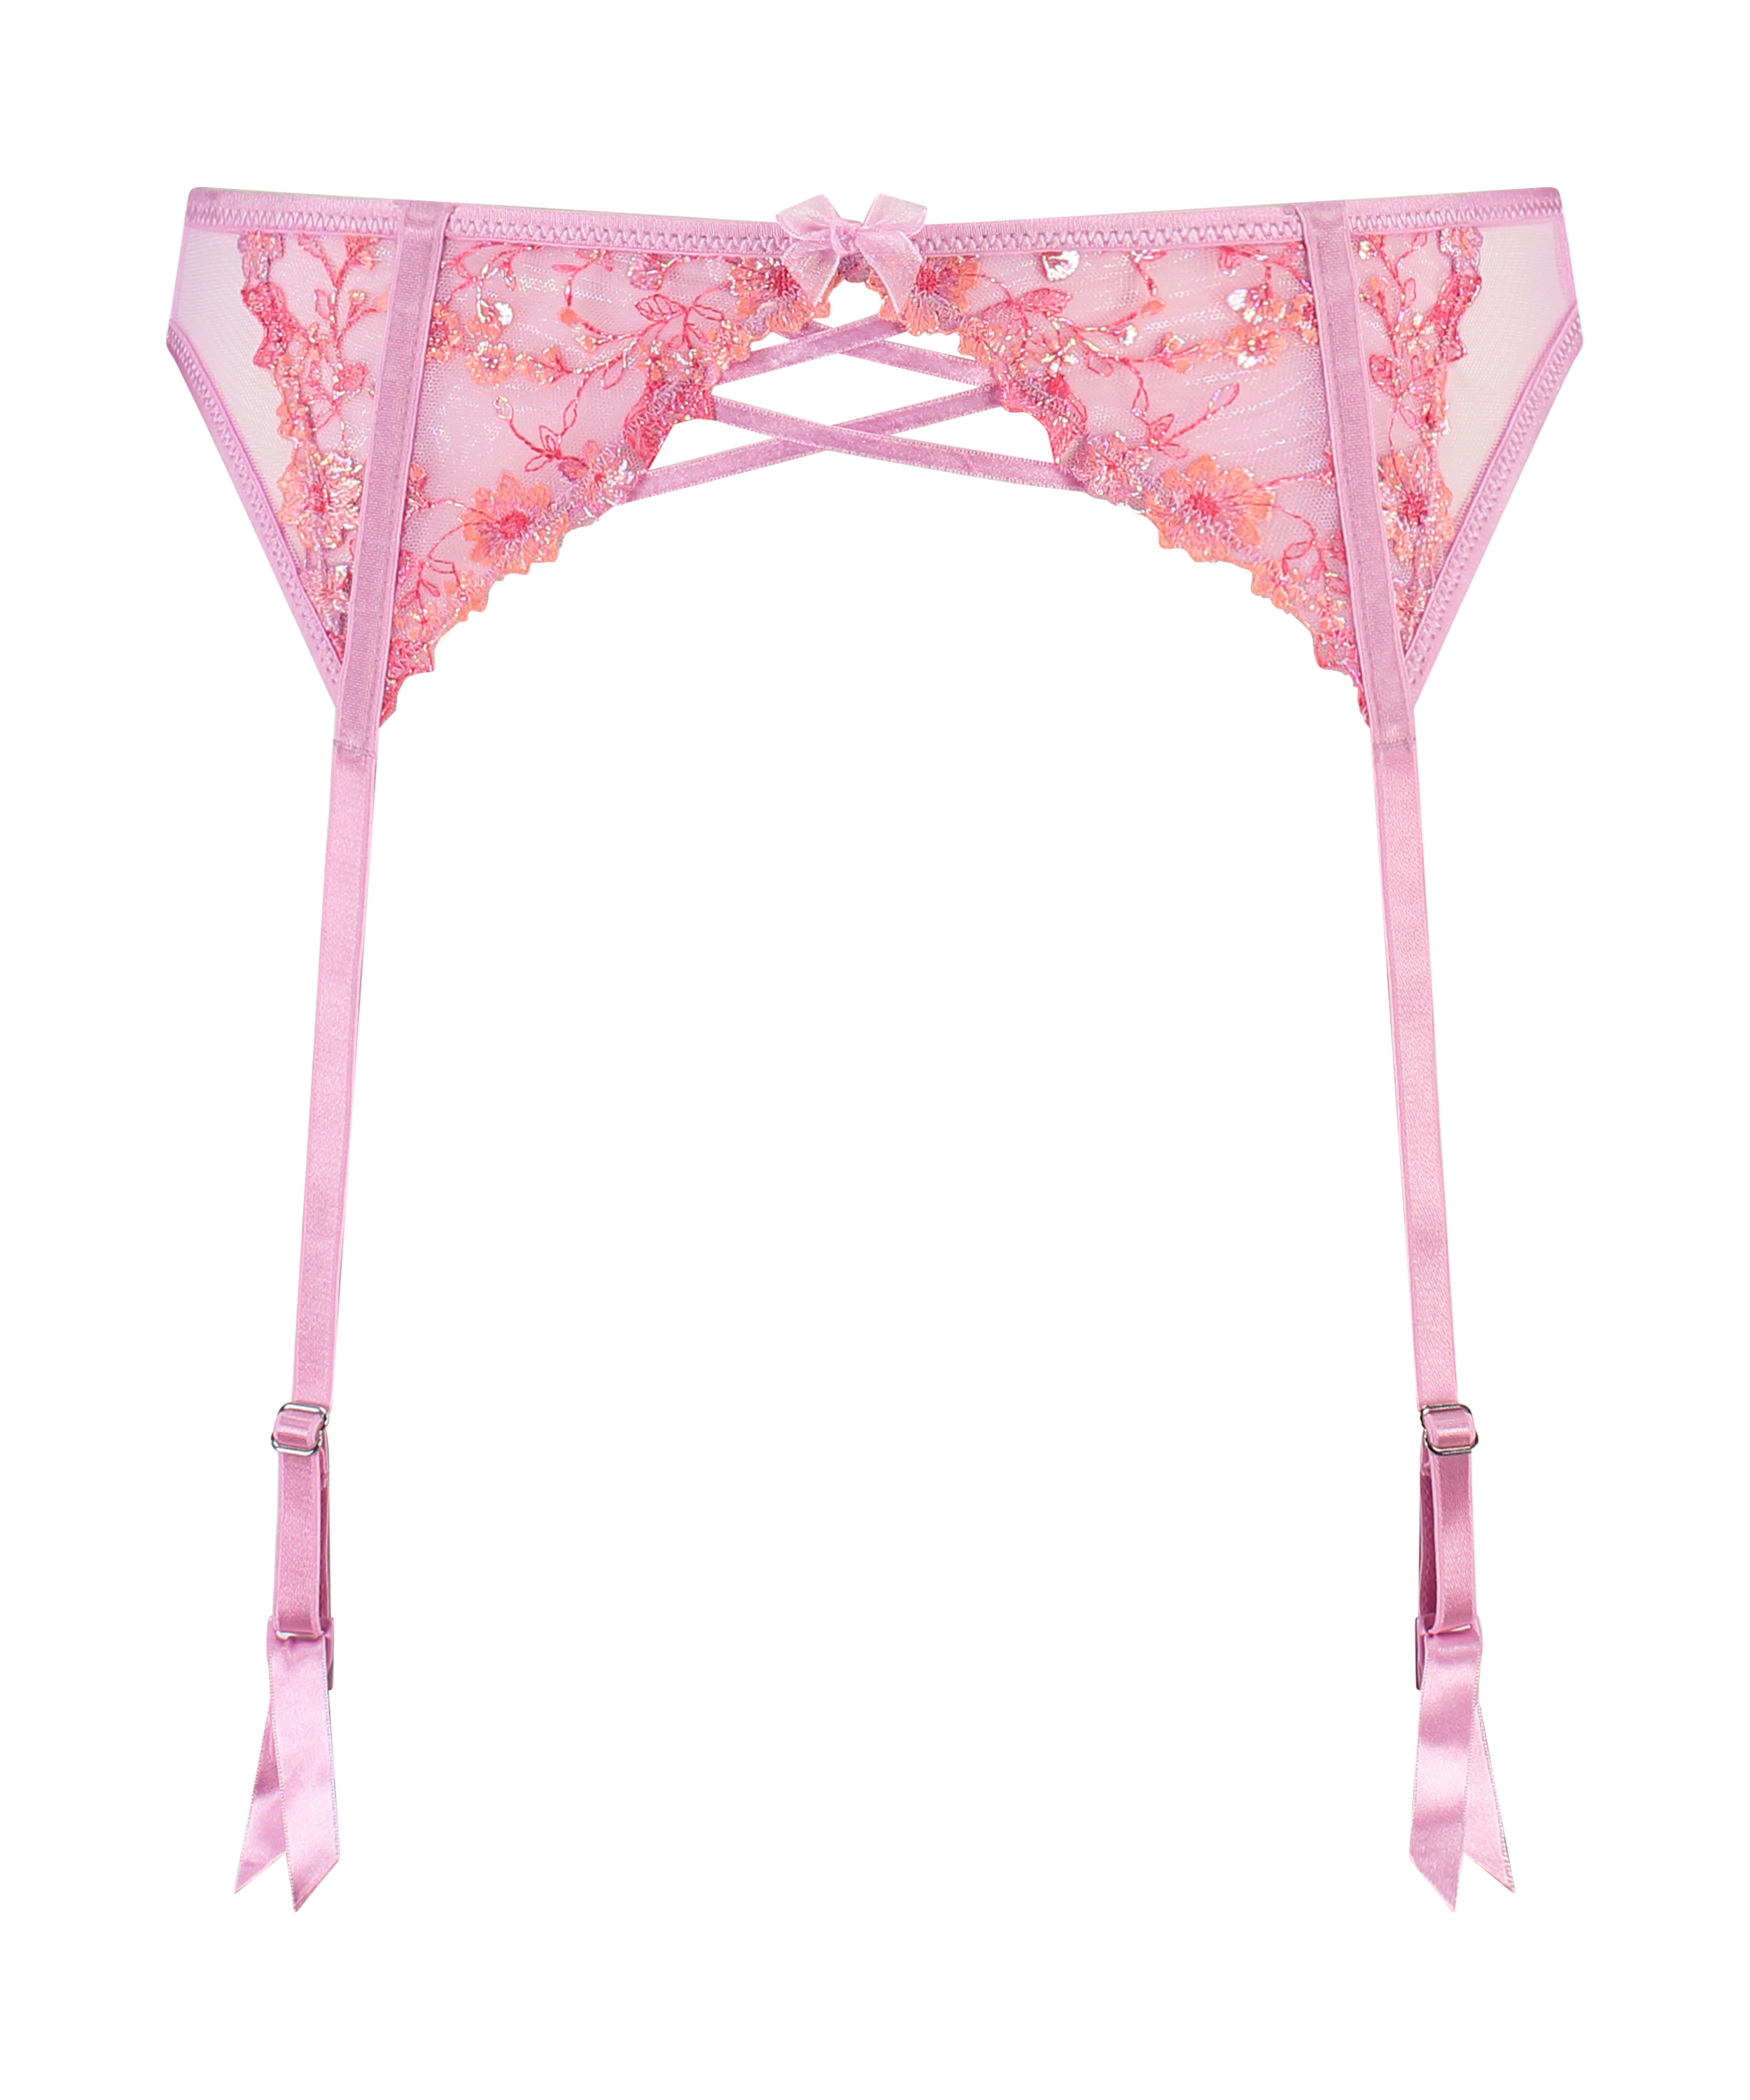 Lillia Suspenders, Pink, main